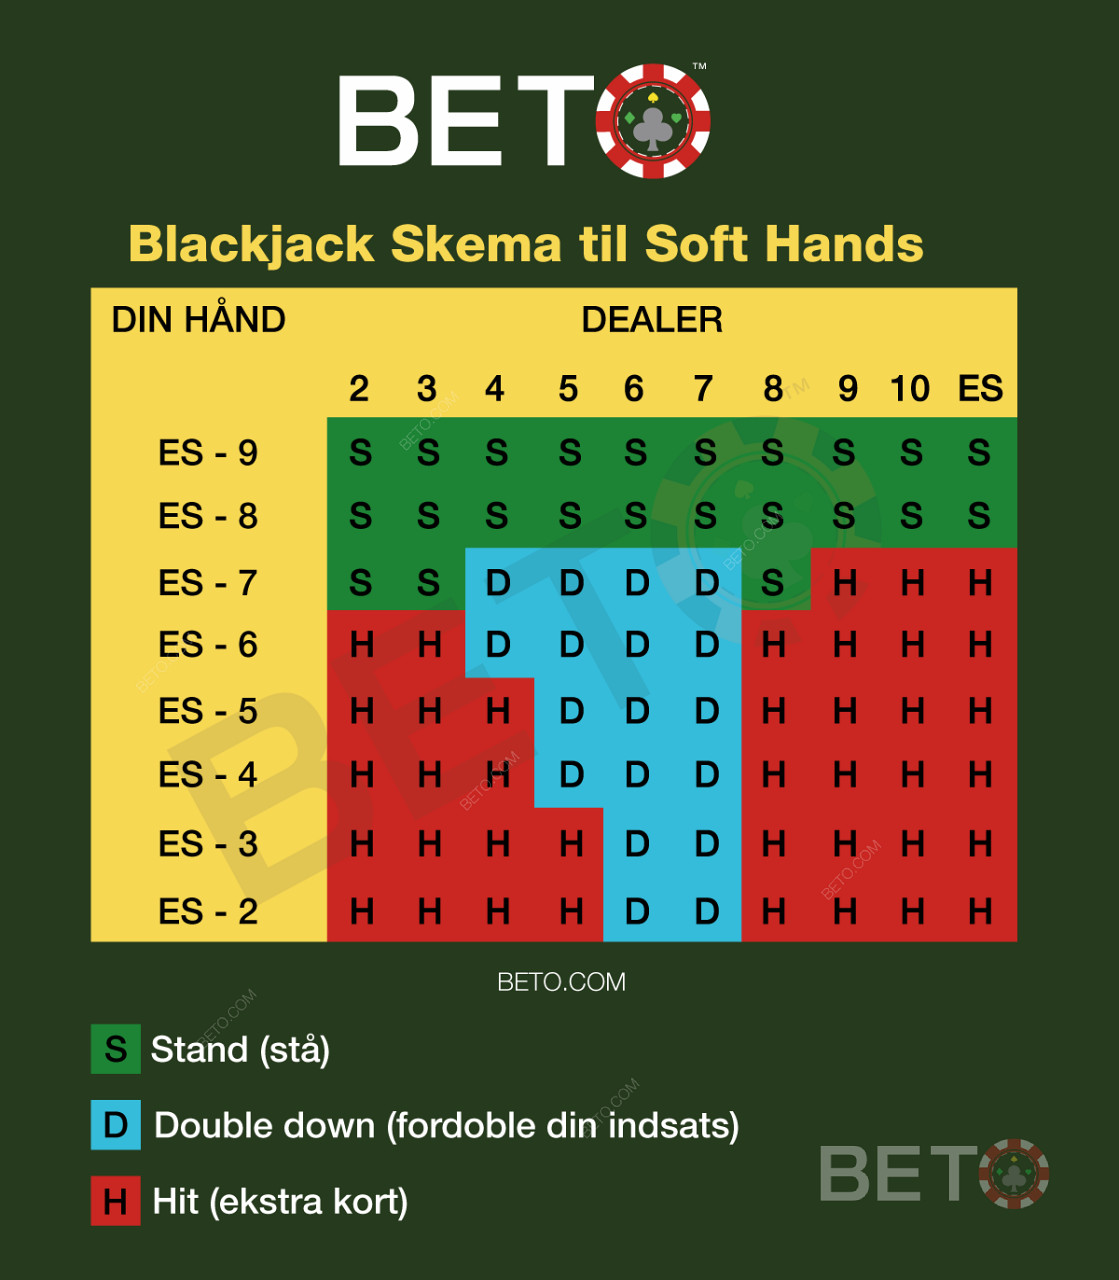 Snyde skema til soft-hands i blackjack